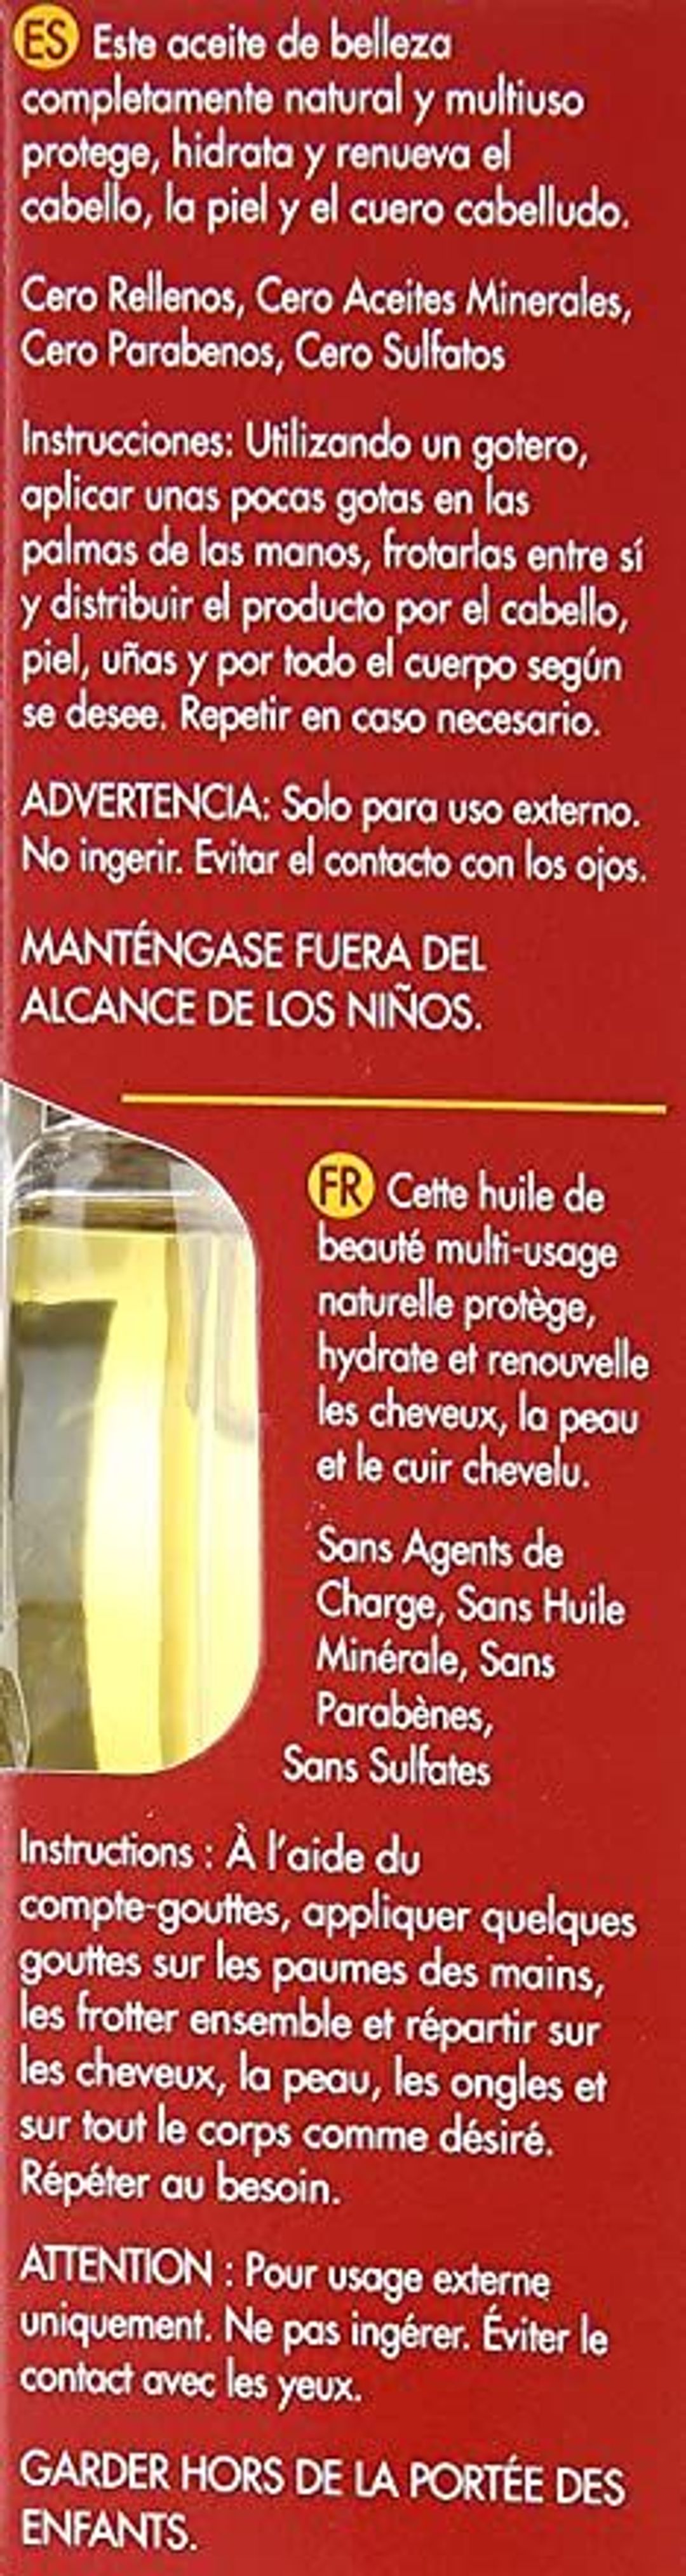 Creme Of Nature 100% Pure Argan Oil - 1oz